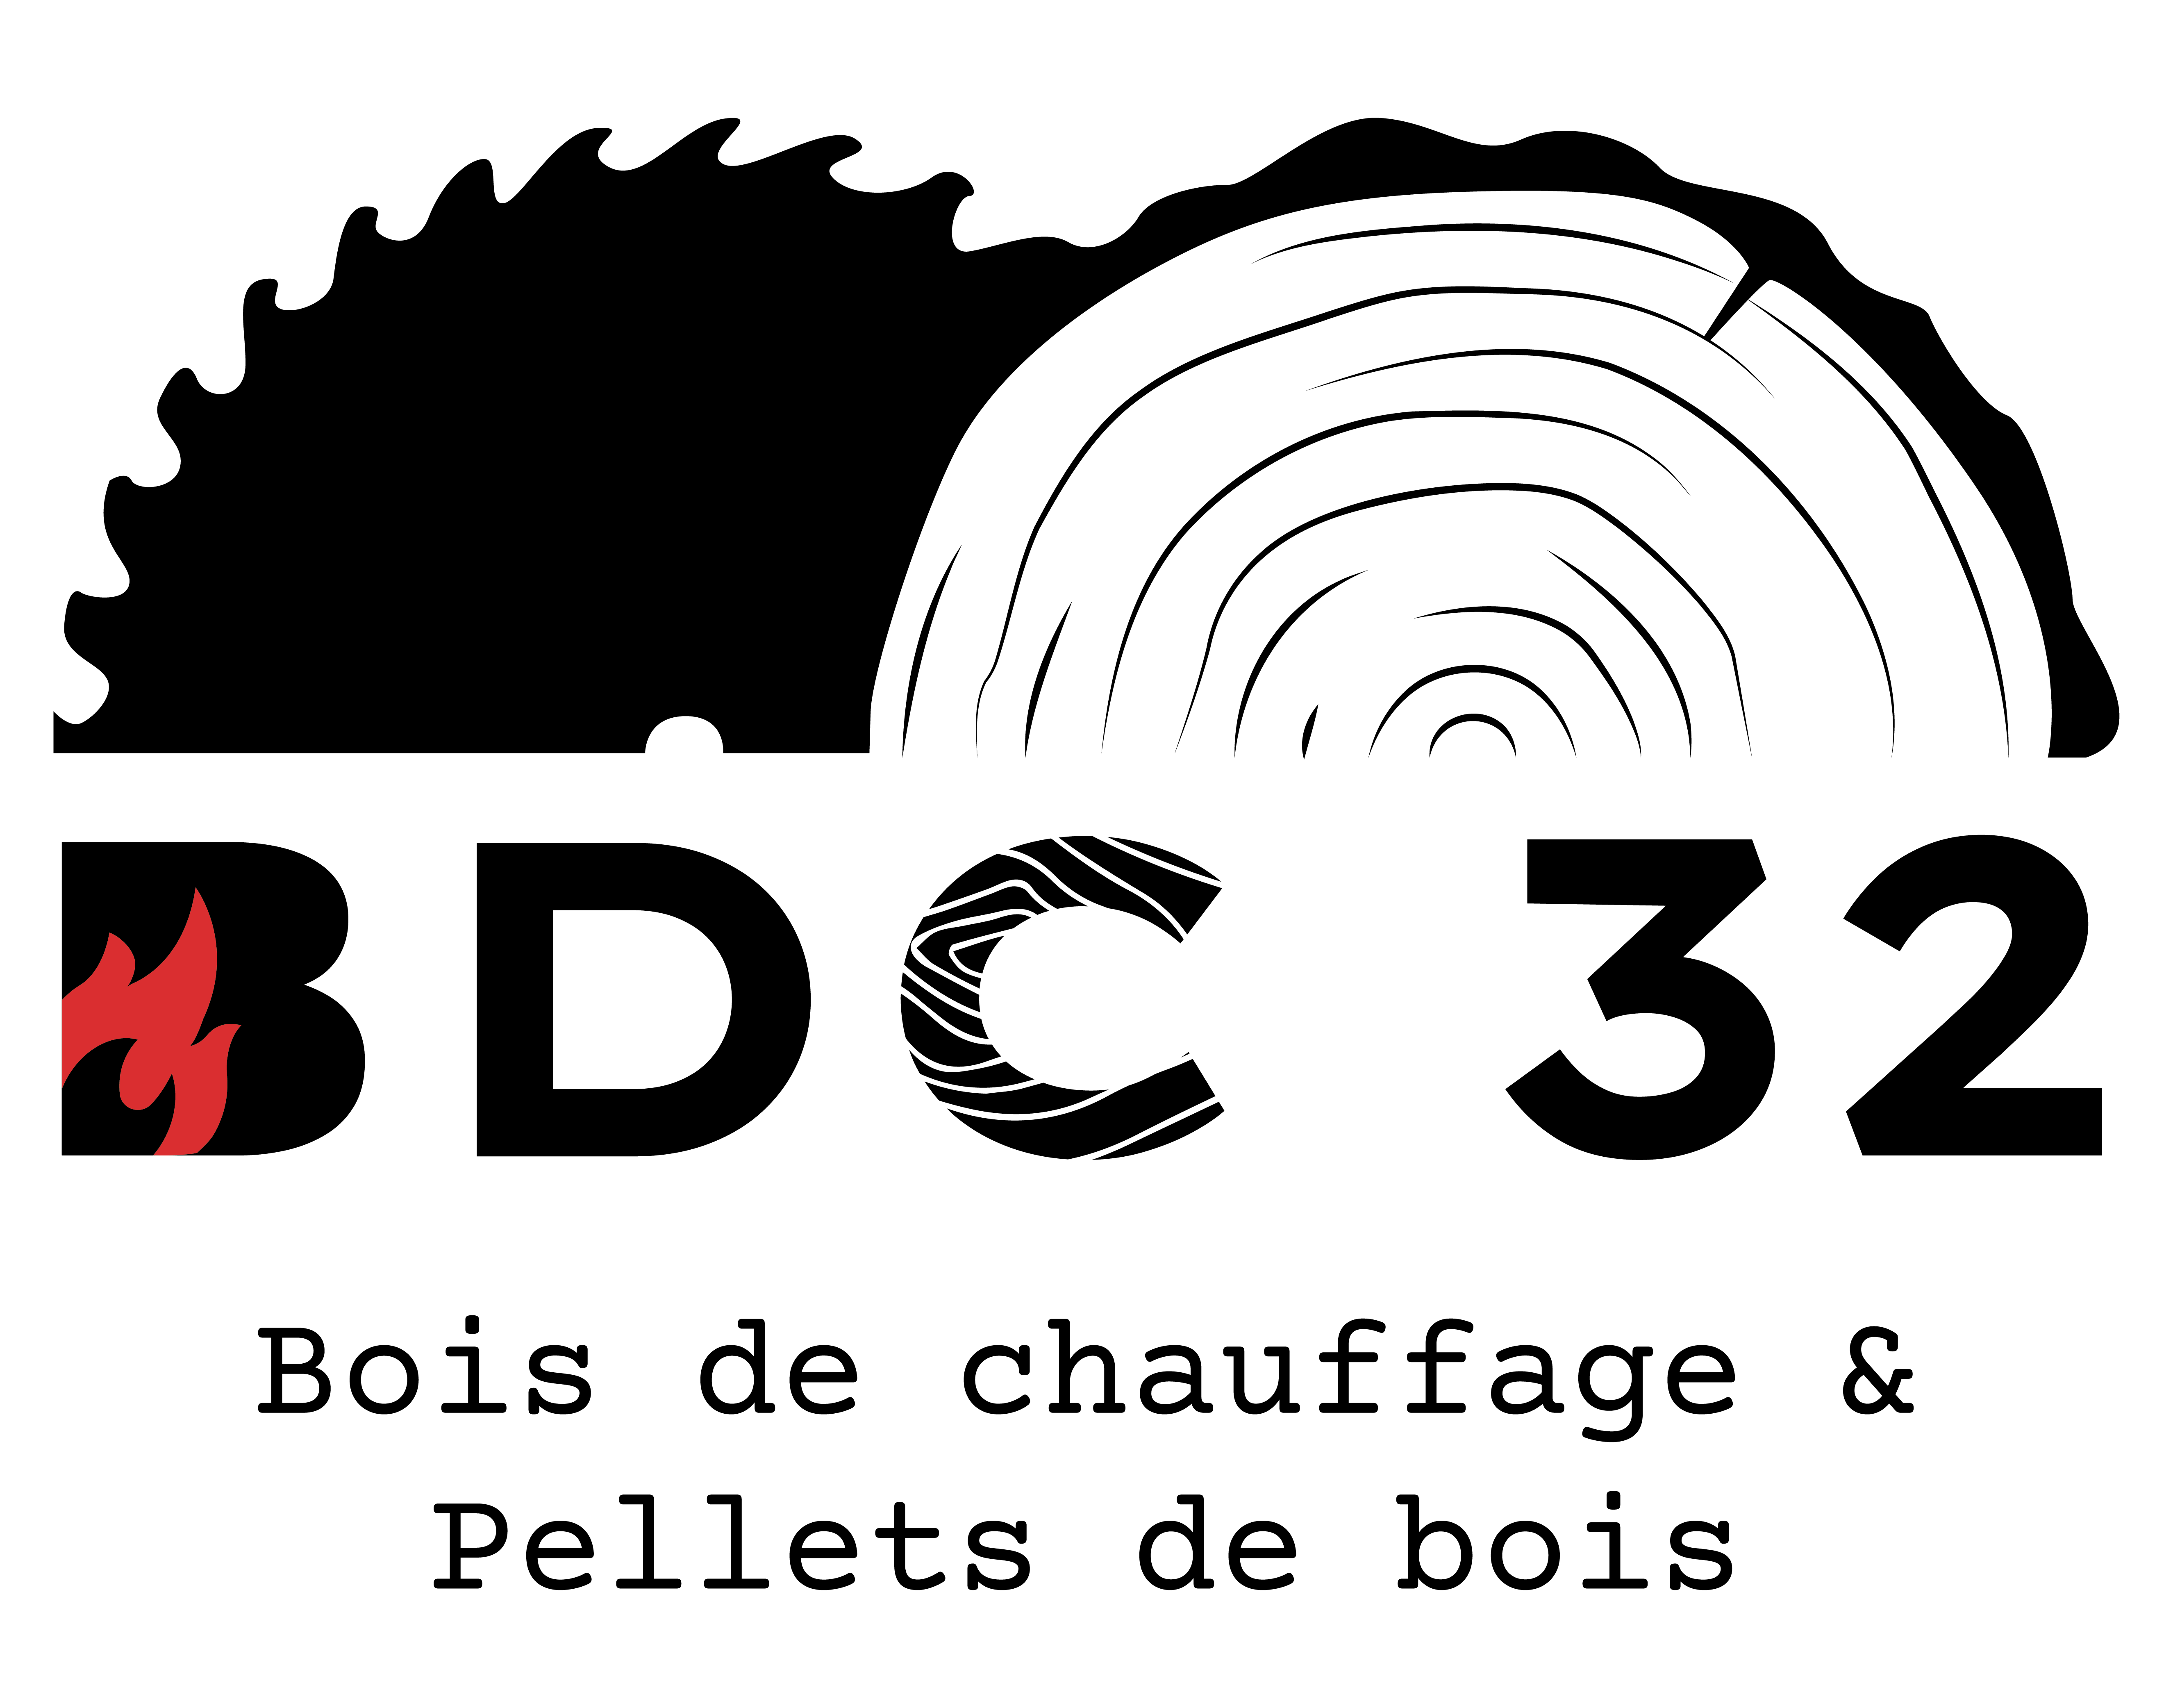 BDC 32